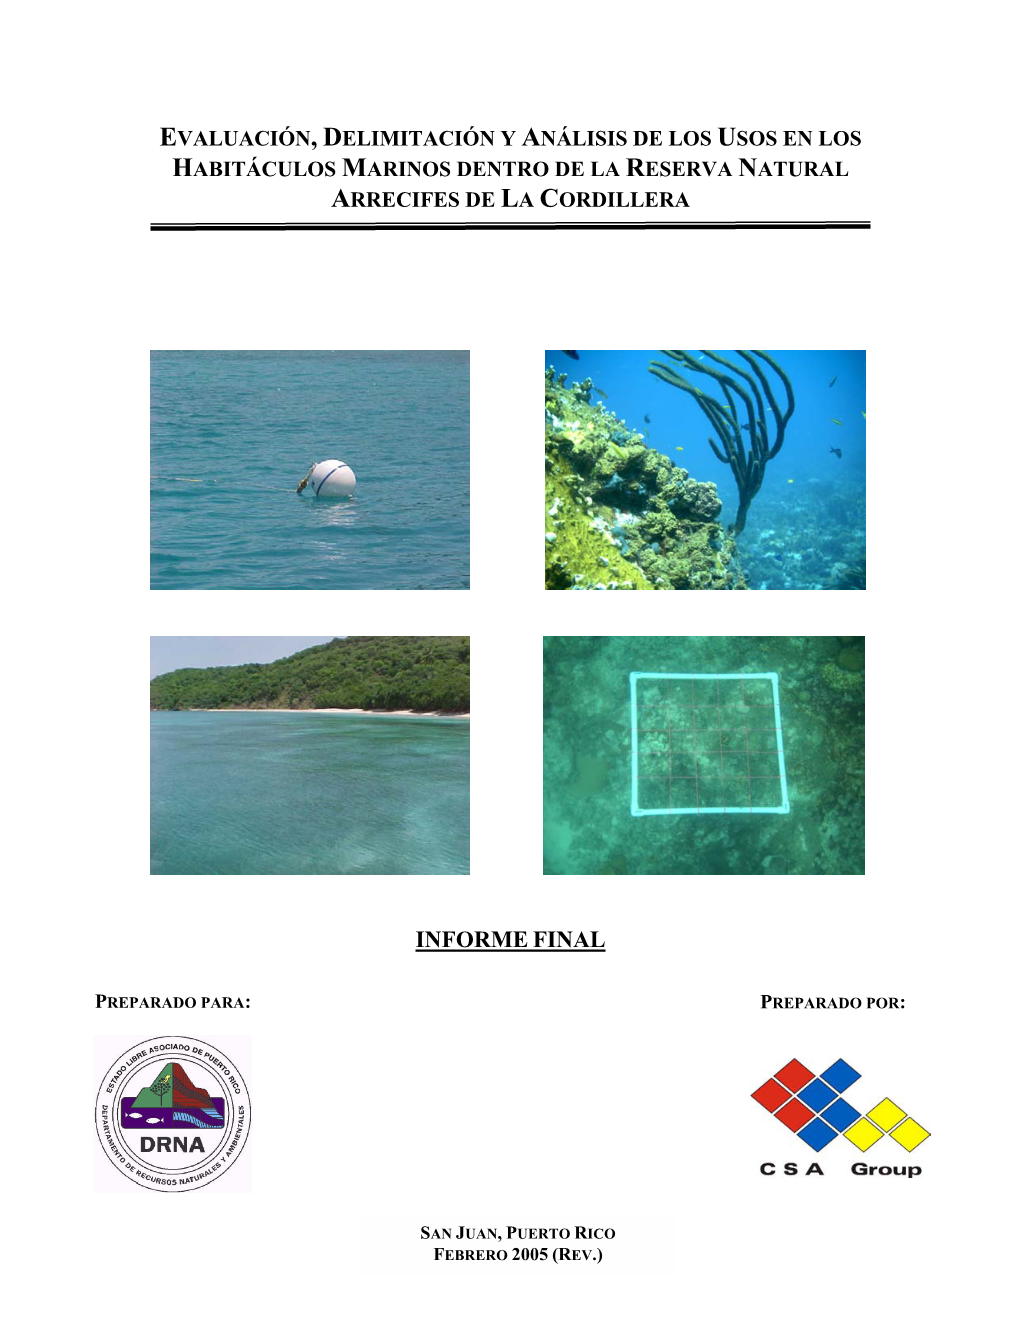 Evaluación, Delimitación Y Análisis De Los Usos En Los Habitáculos Marinos Dentro De La Reserva Natural Arrecifes De La Cordillera